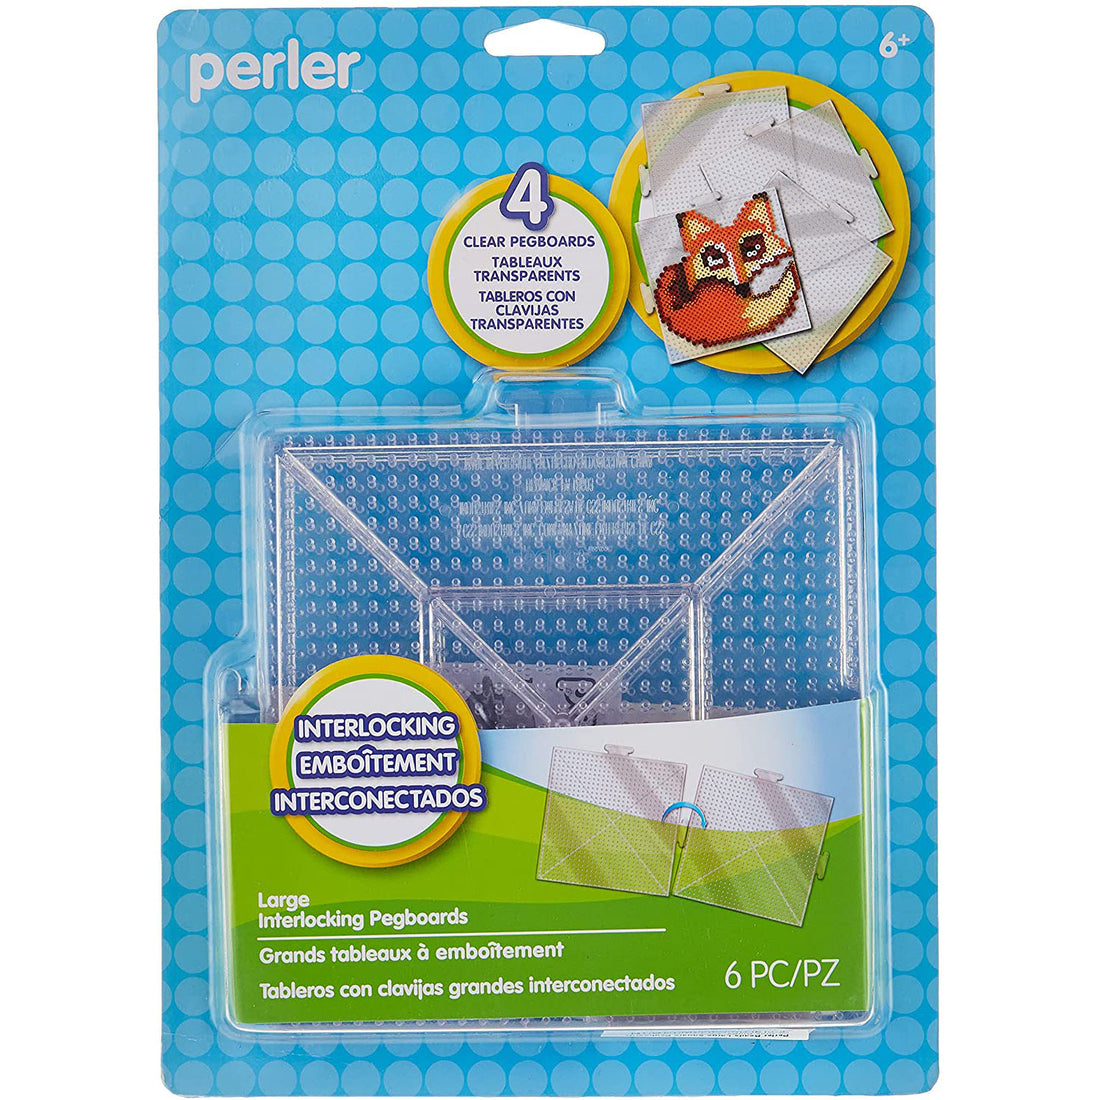 Perler - Standard Tweezers – Top Tier Beads